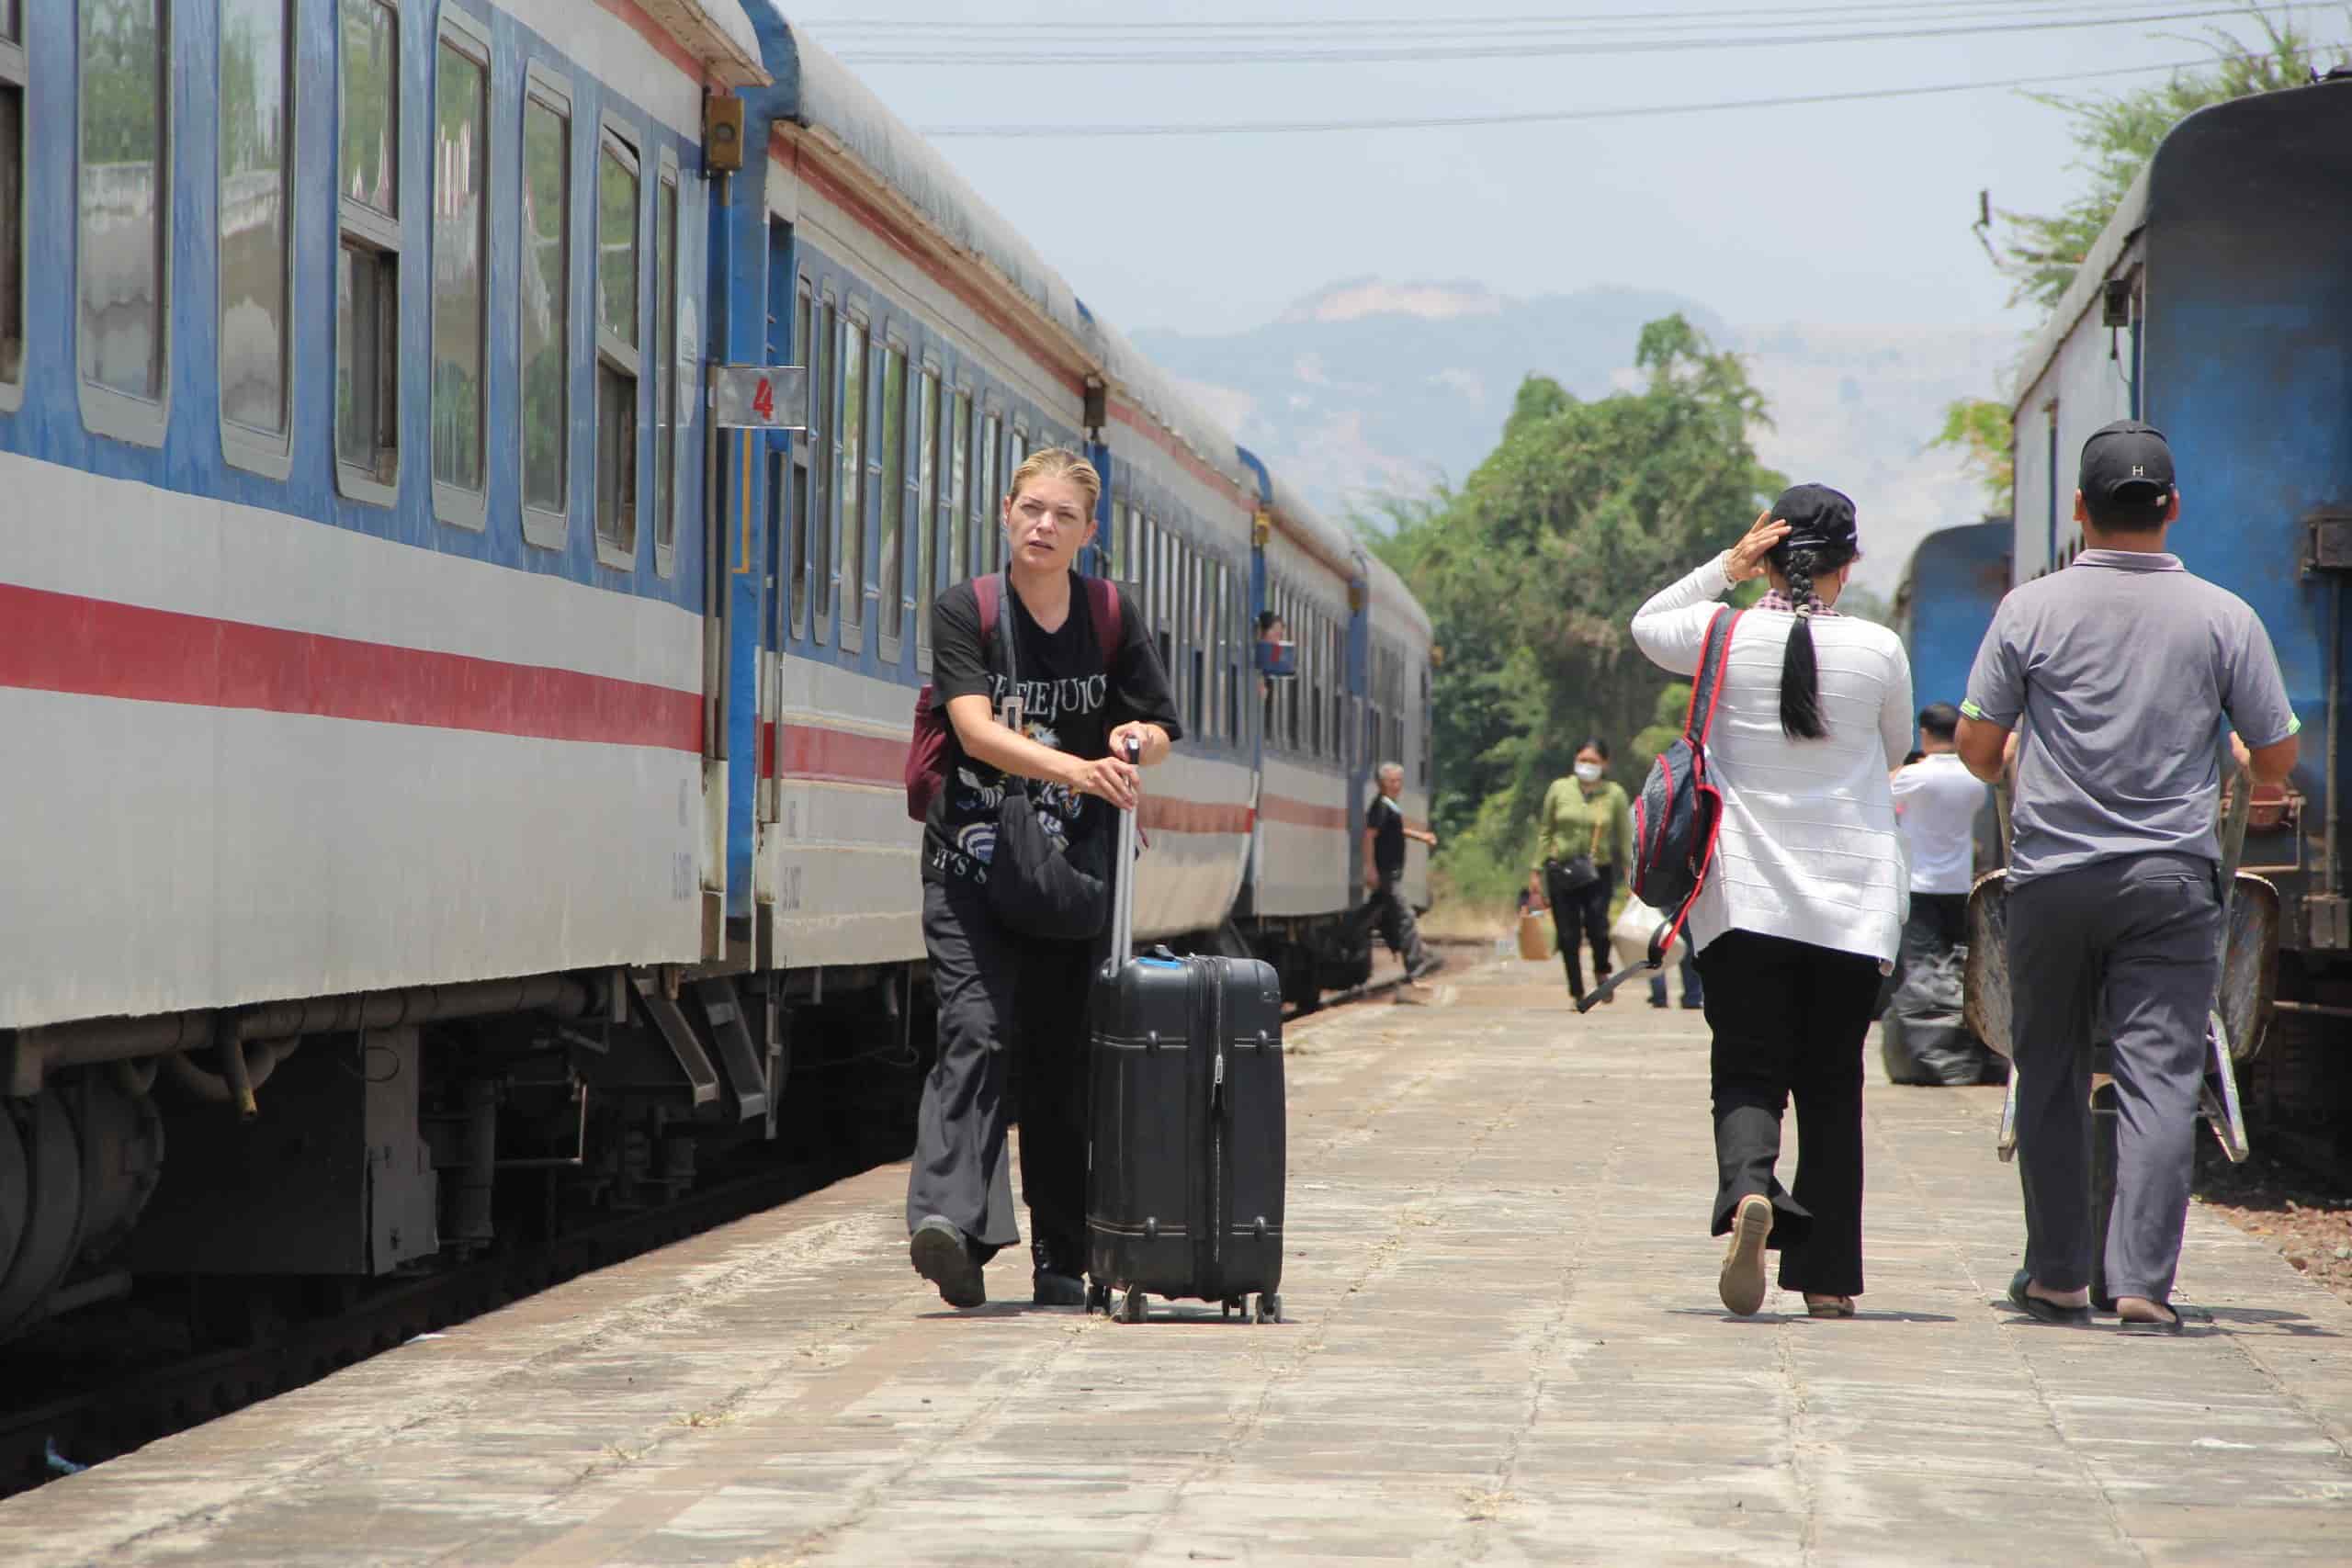 trong thời gian ảnh hưởng sự cố sạt lở hầm đường sắt Bãi Gió, Chi nhánh Vận tải đường sắt Nha Trang đã tổ chức chuyển tải hành khách bằng ô tô từ Ga Giã đến ga Tuy Hòa và ngược lại với 110 chuyến tàu (khoảng 30.100 hành khách)